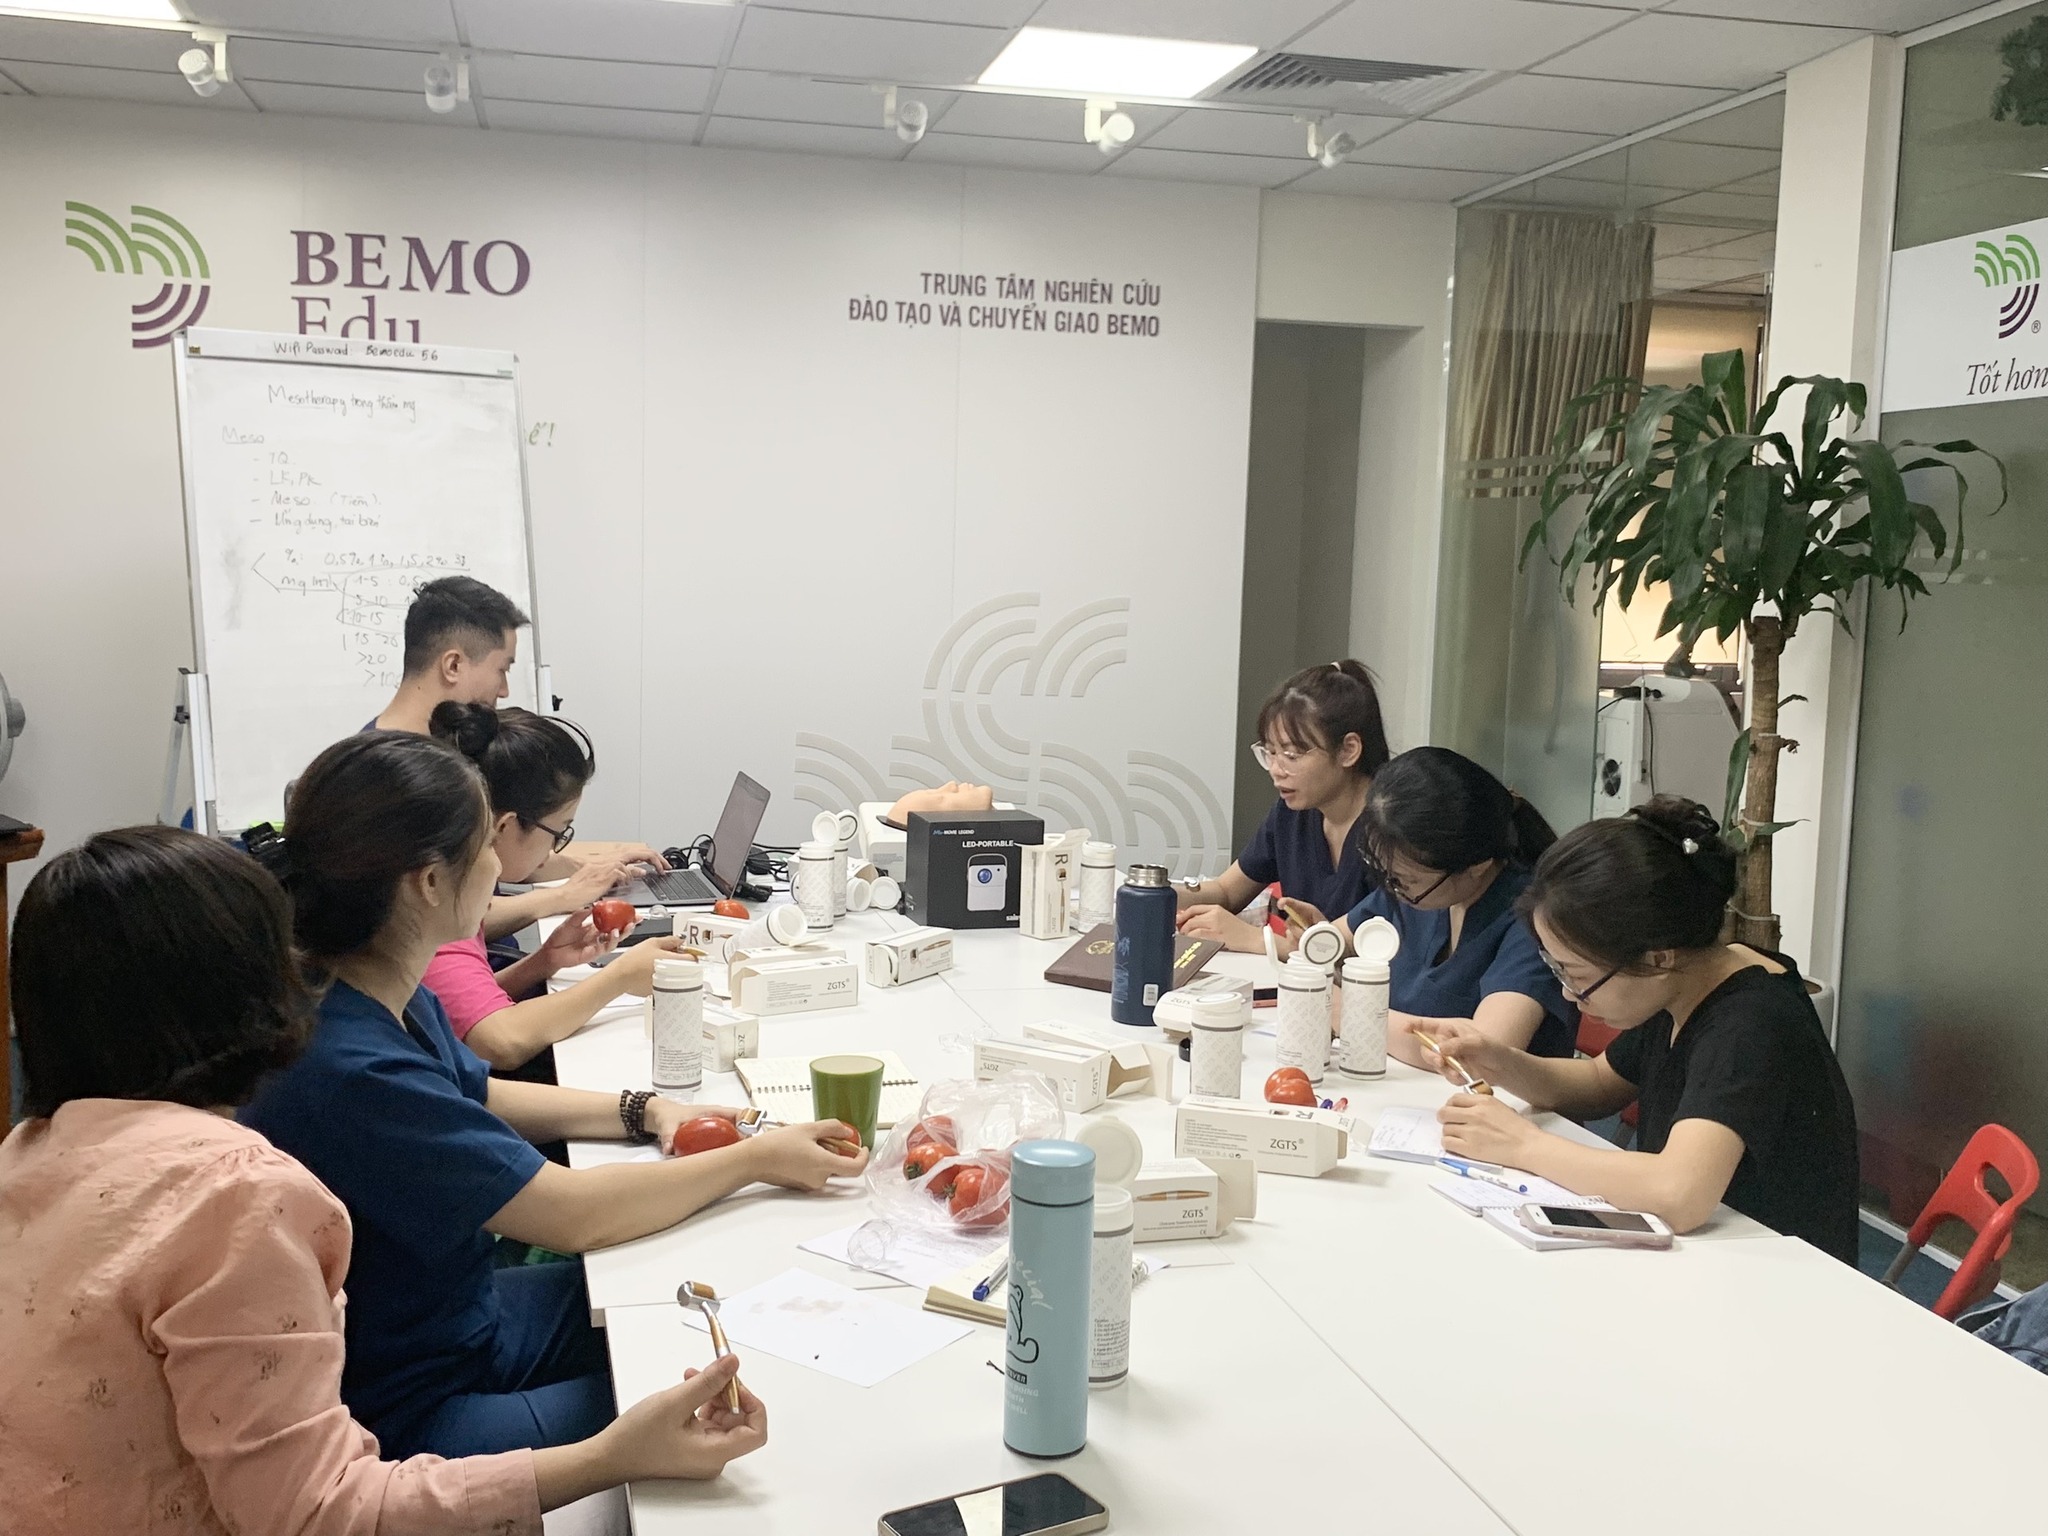 BEMO Edu - Trung tâm đào tạo thẩm mỹ ảnh 3